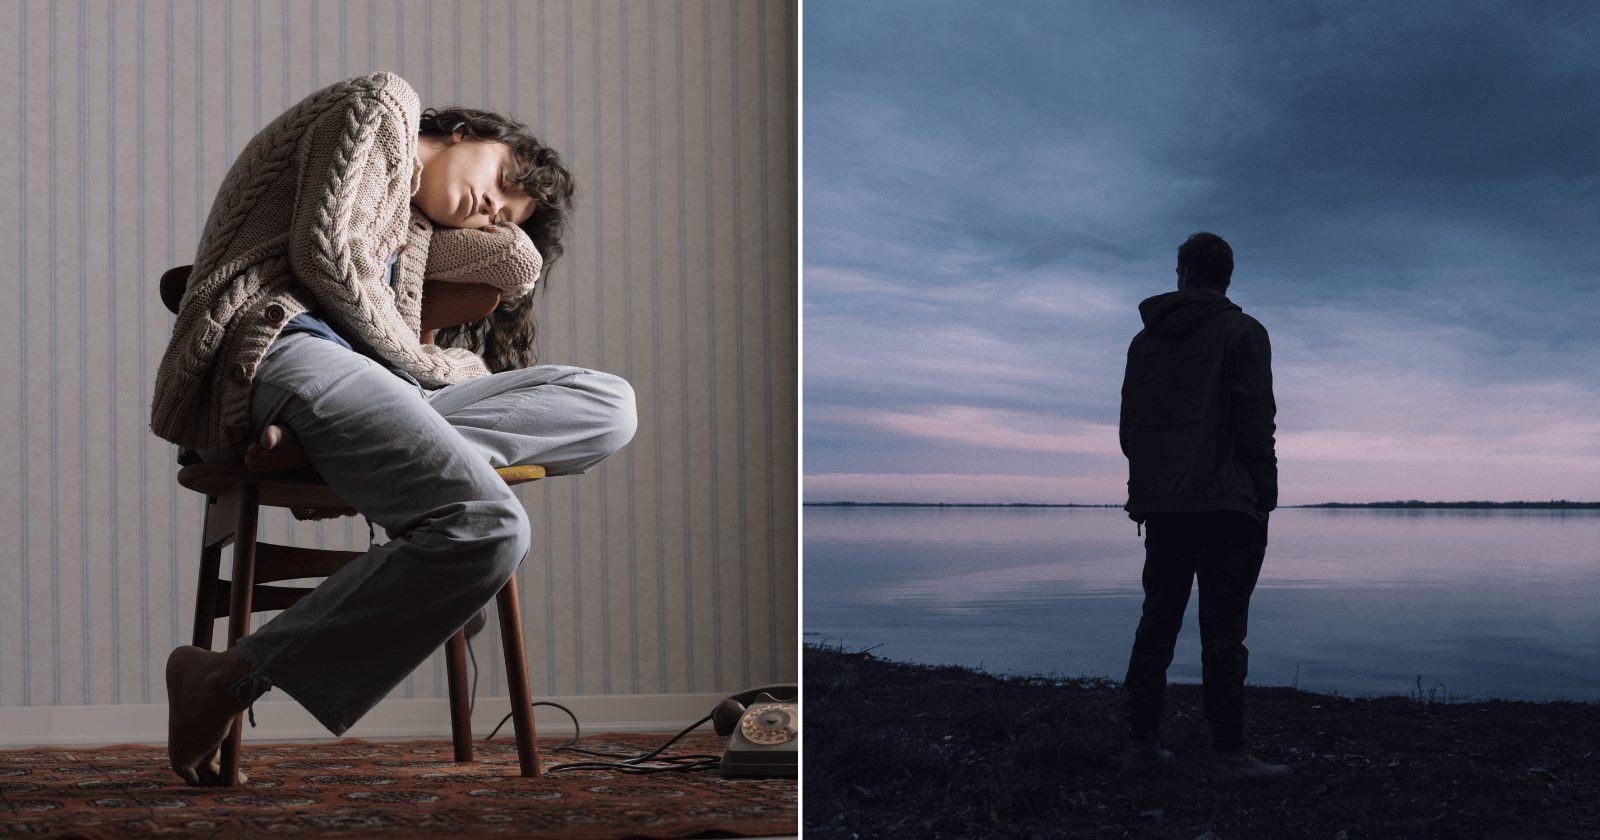 11 consequências da solidão que podem afetar drasticamente a sua saúde